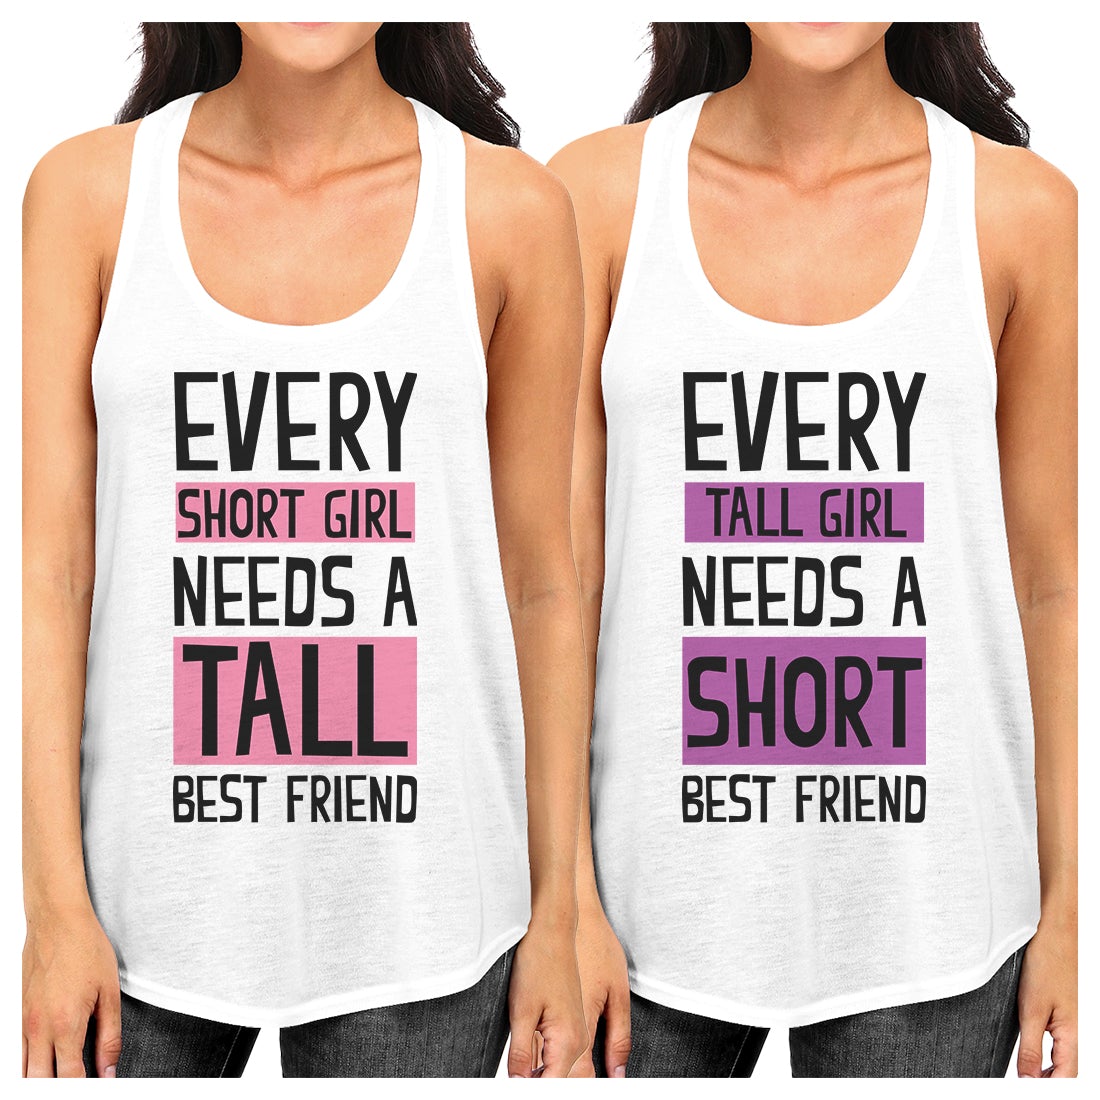 Tall Short Friend Best Friend Gift Shirts Womens Matching Tank Tops White